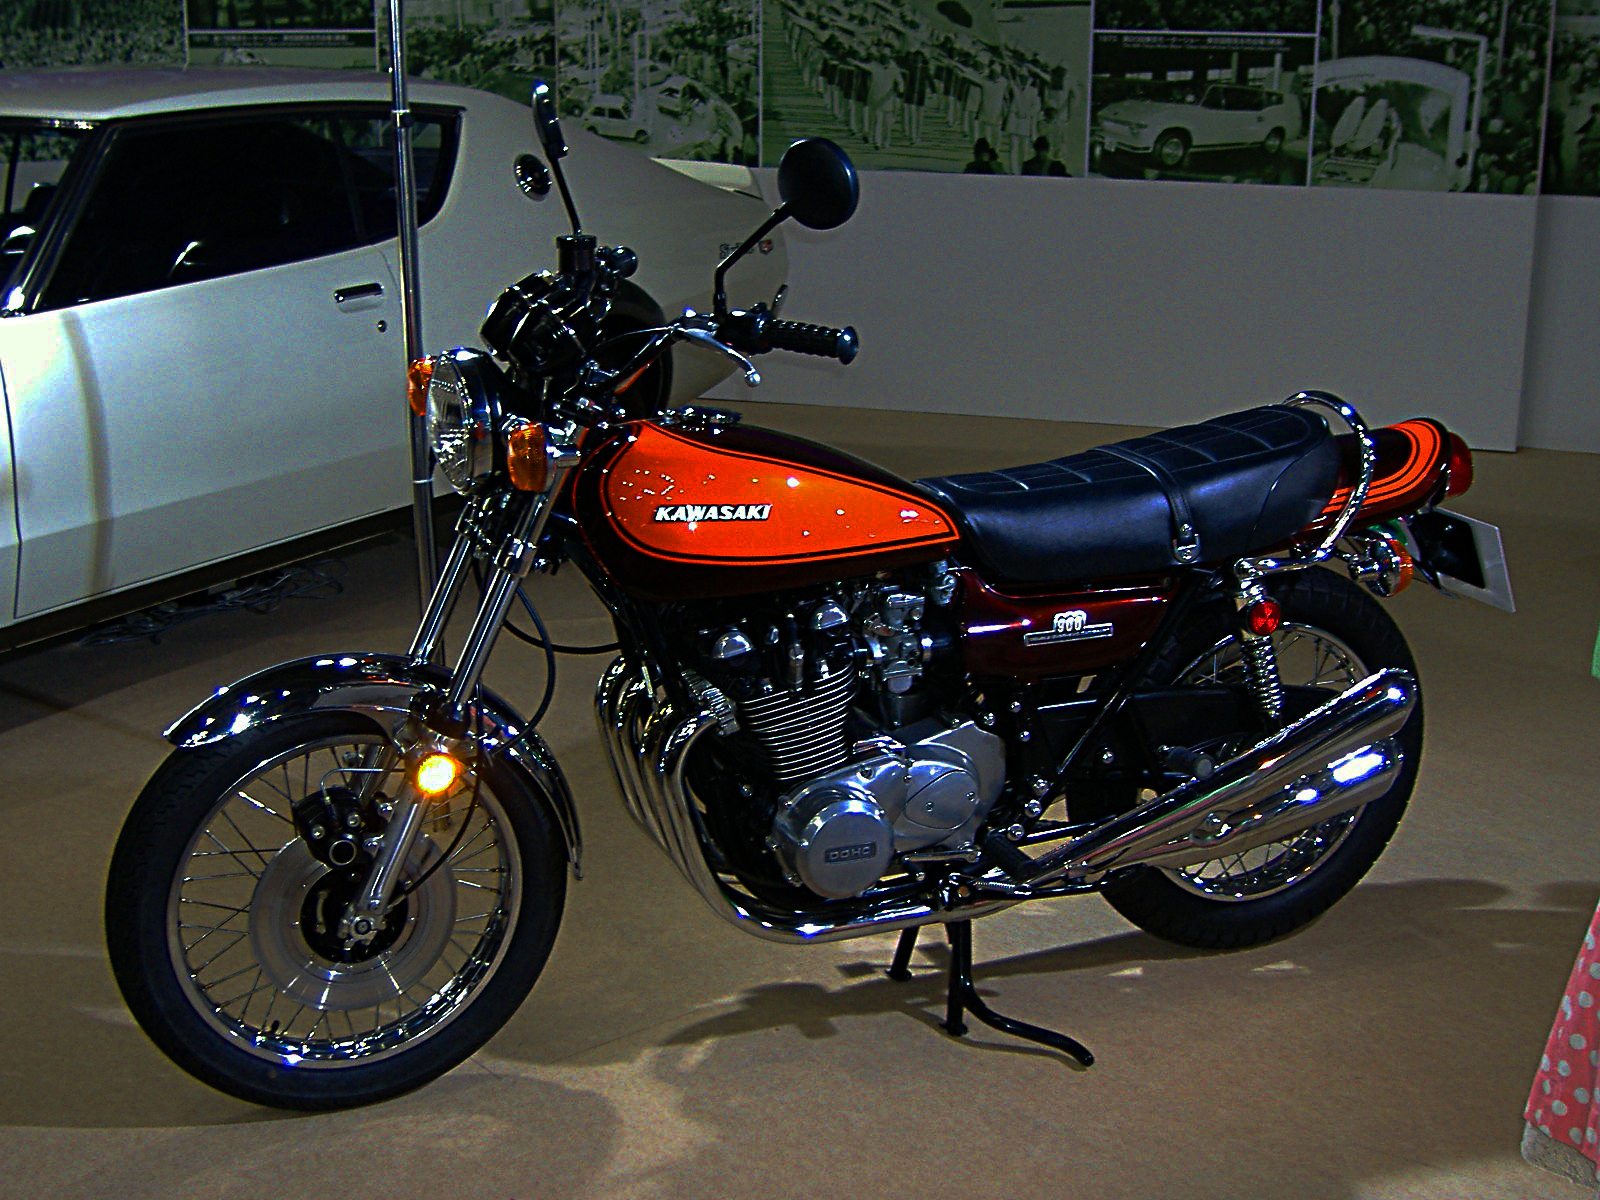 Kawasaki Z1 Motorcycle Wiki Fandom Powered By Wikia